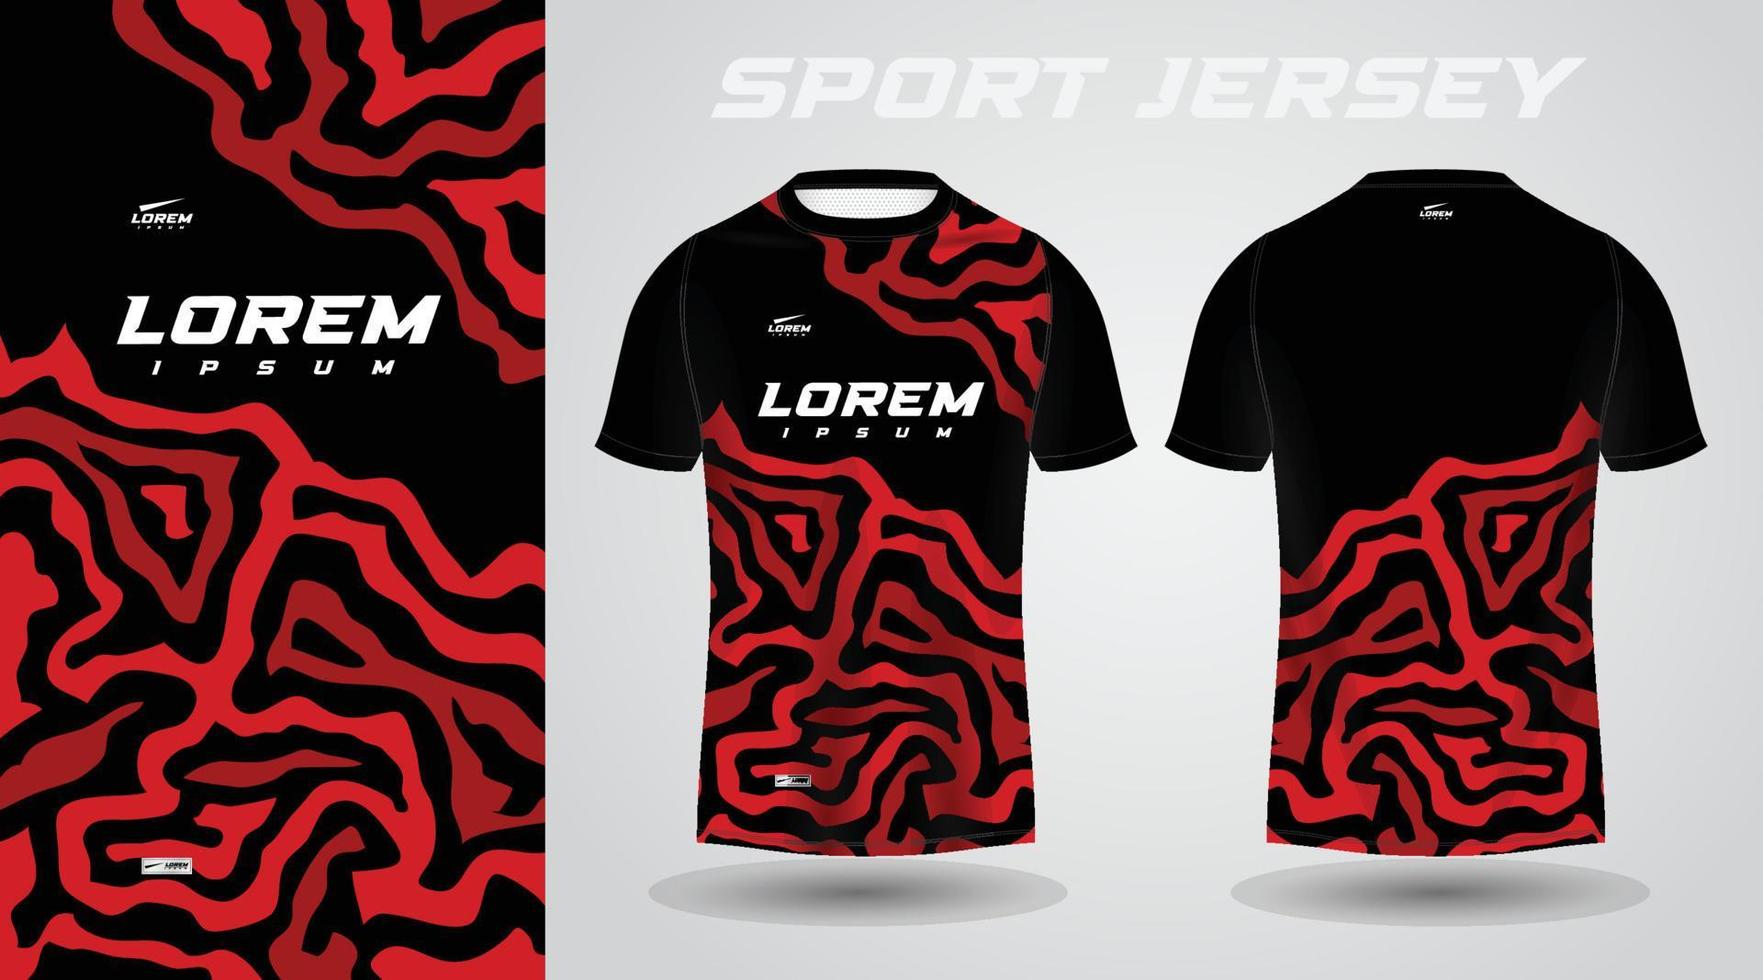 nero rosso calcio calcio sport maglia modello design per abbigliamento sportivo. calcio maglietta modello. vettore